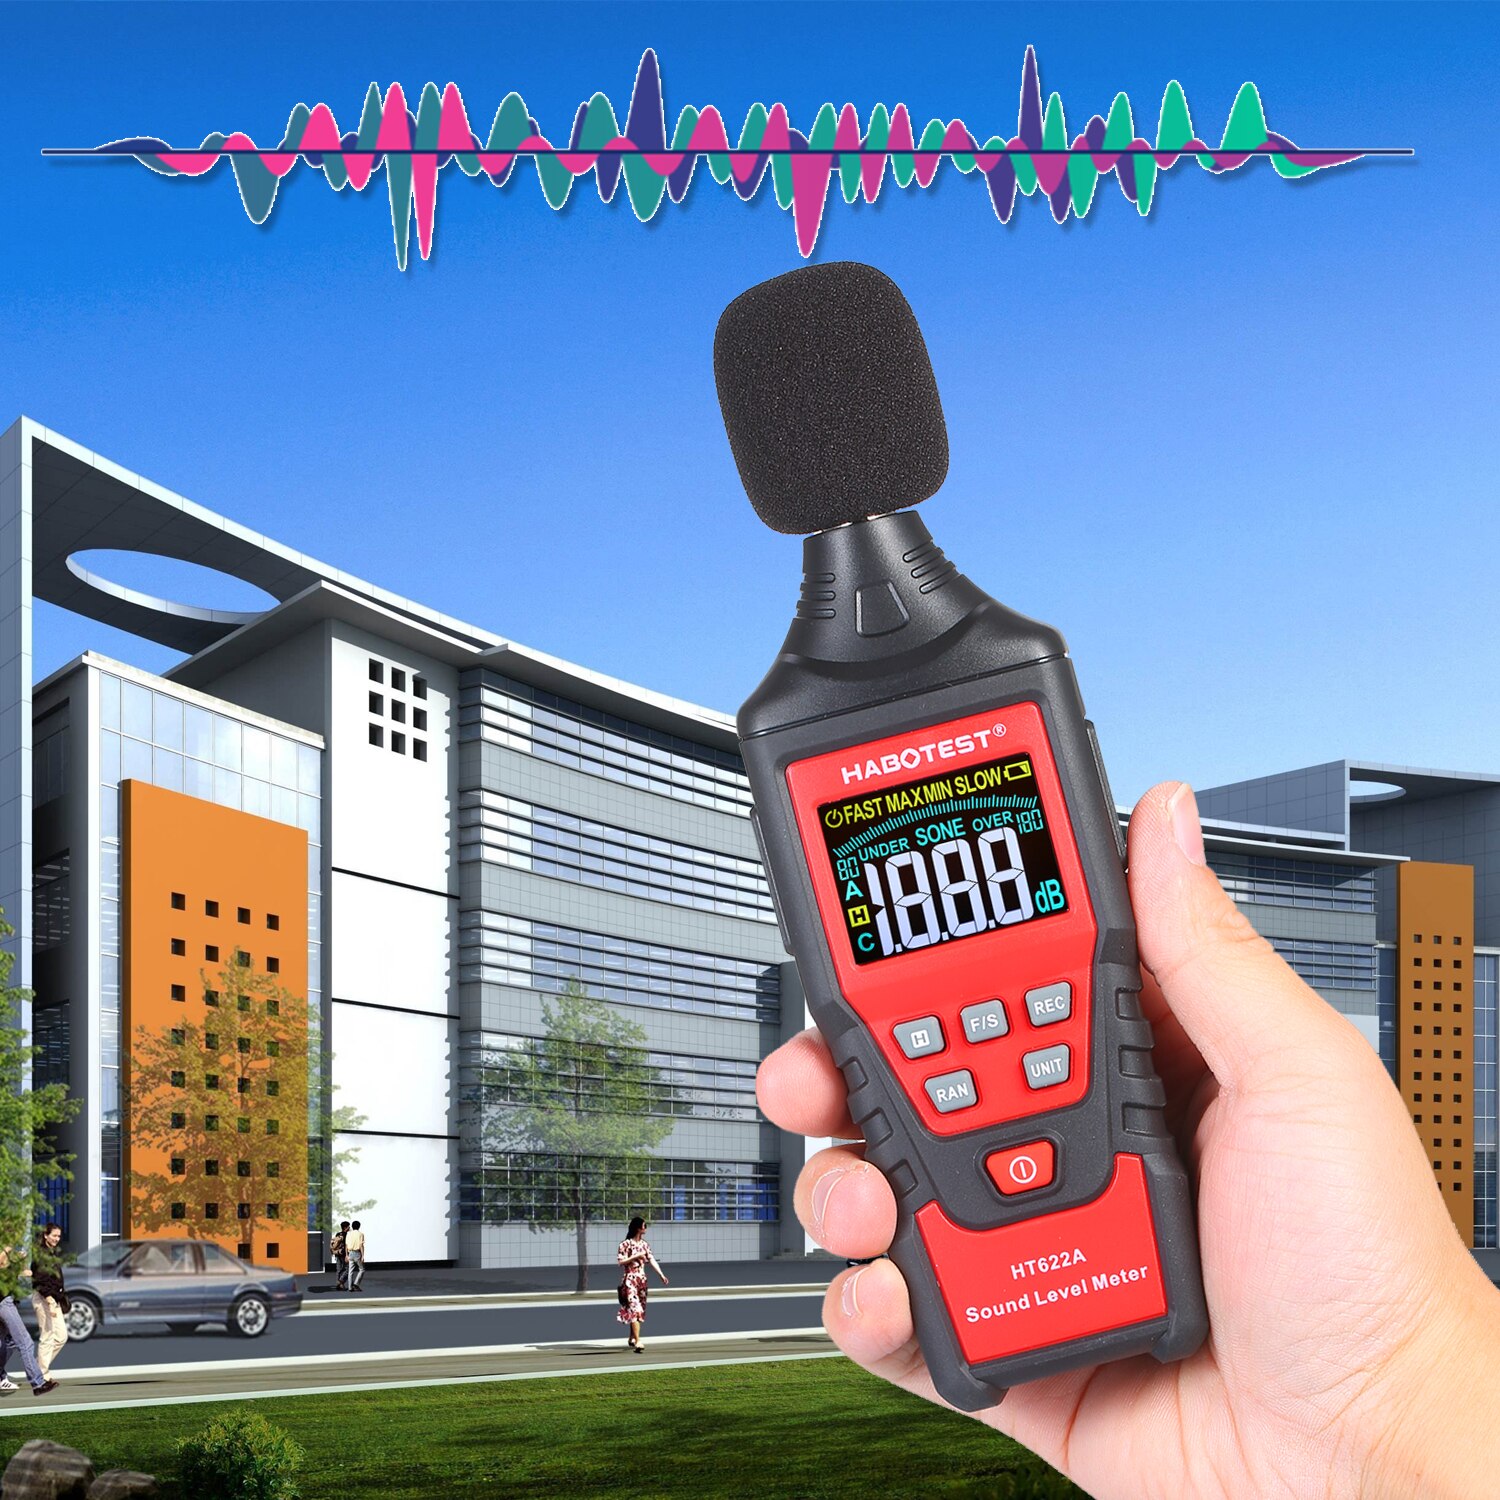 Habotest HT622A Digitale Decibel Meter Lcd-kleurenscherm Handheld Noise Sound Level Meter Met Tool Bag Bereik Van 30-130dB (een)